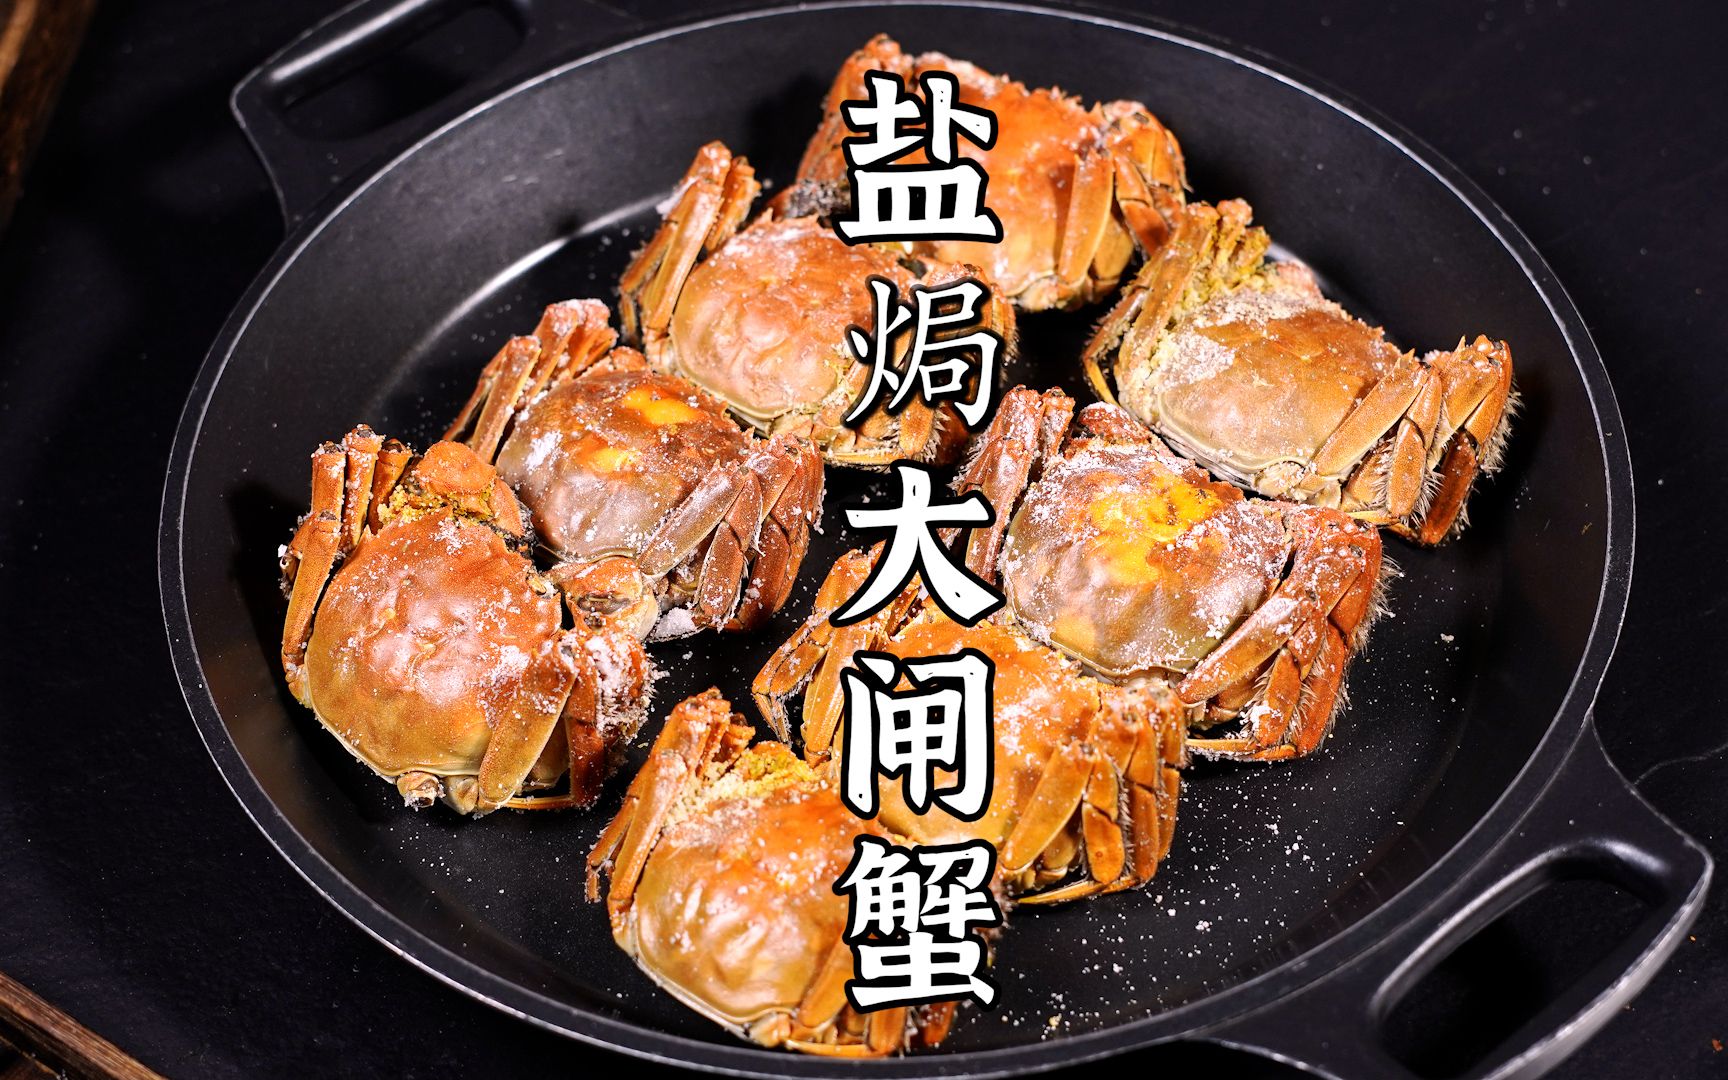 咸香鲜美的盐焗大闸蟹，开启大闸蟹的神仙吃法。